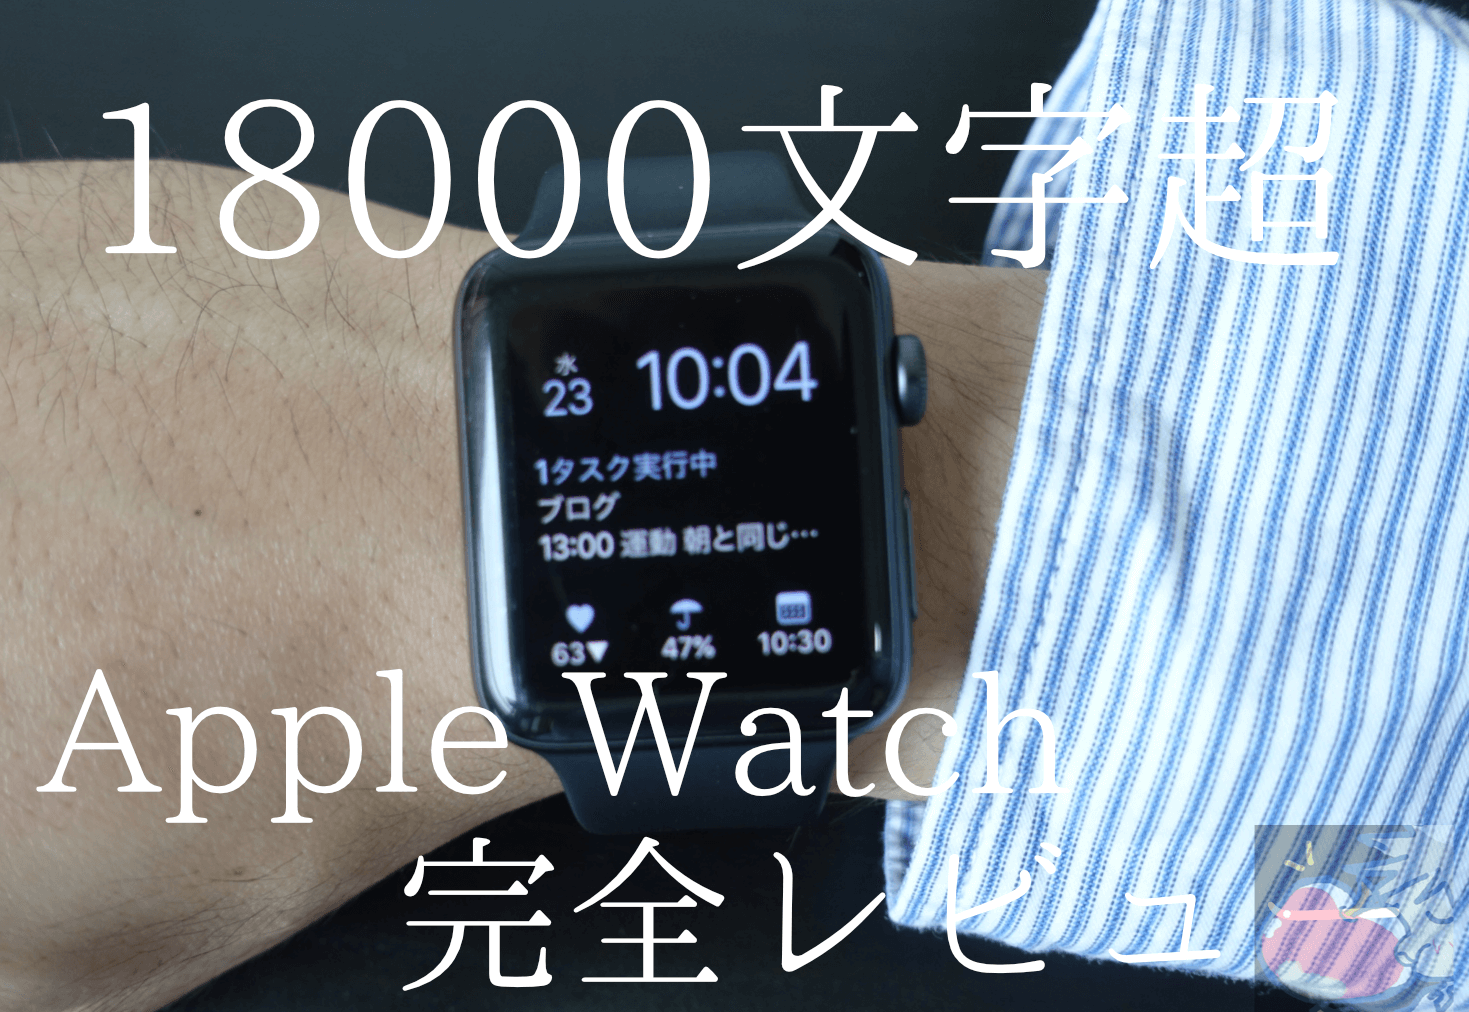 お知らせ。Apple Watch使い方完全レビューの更新